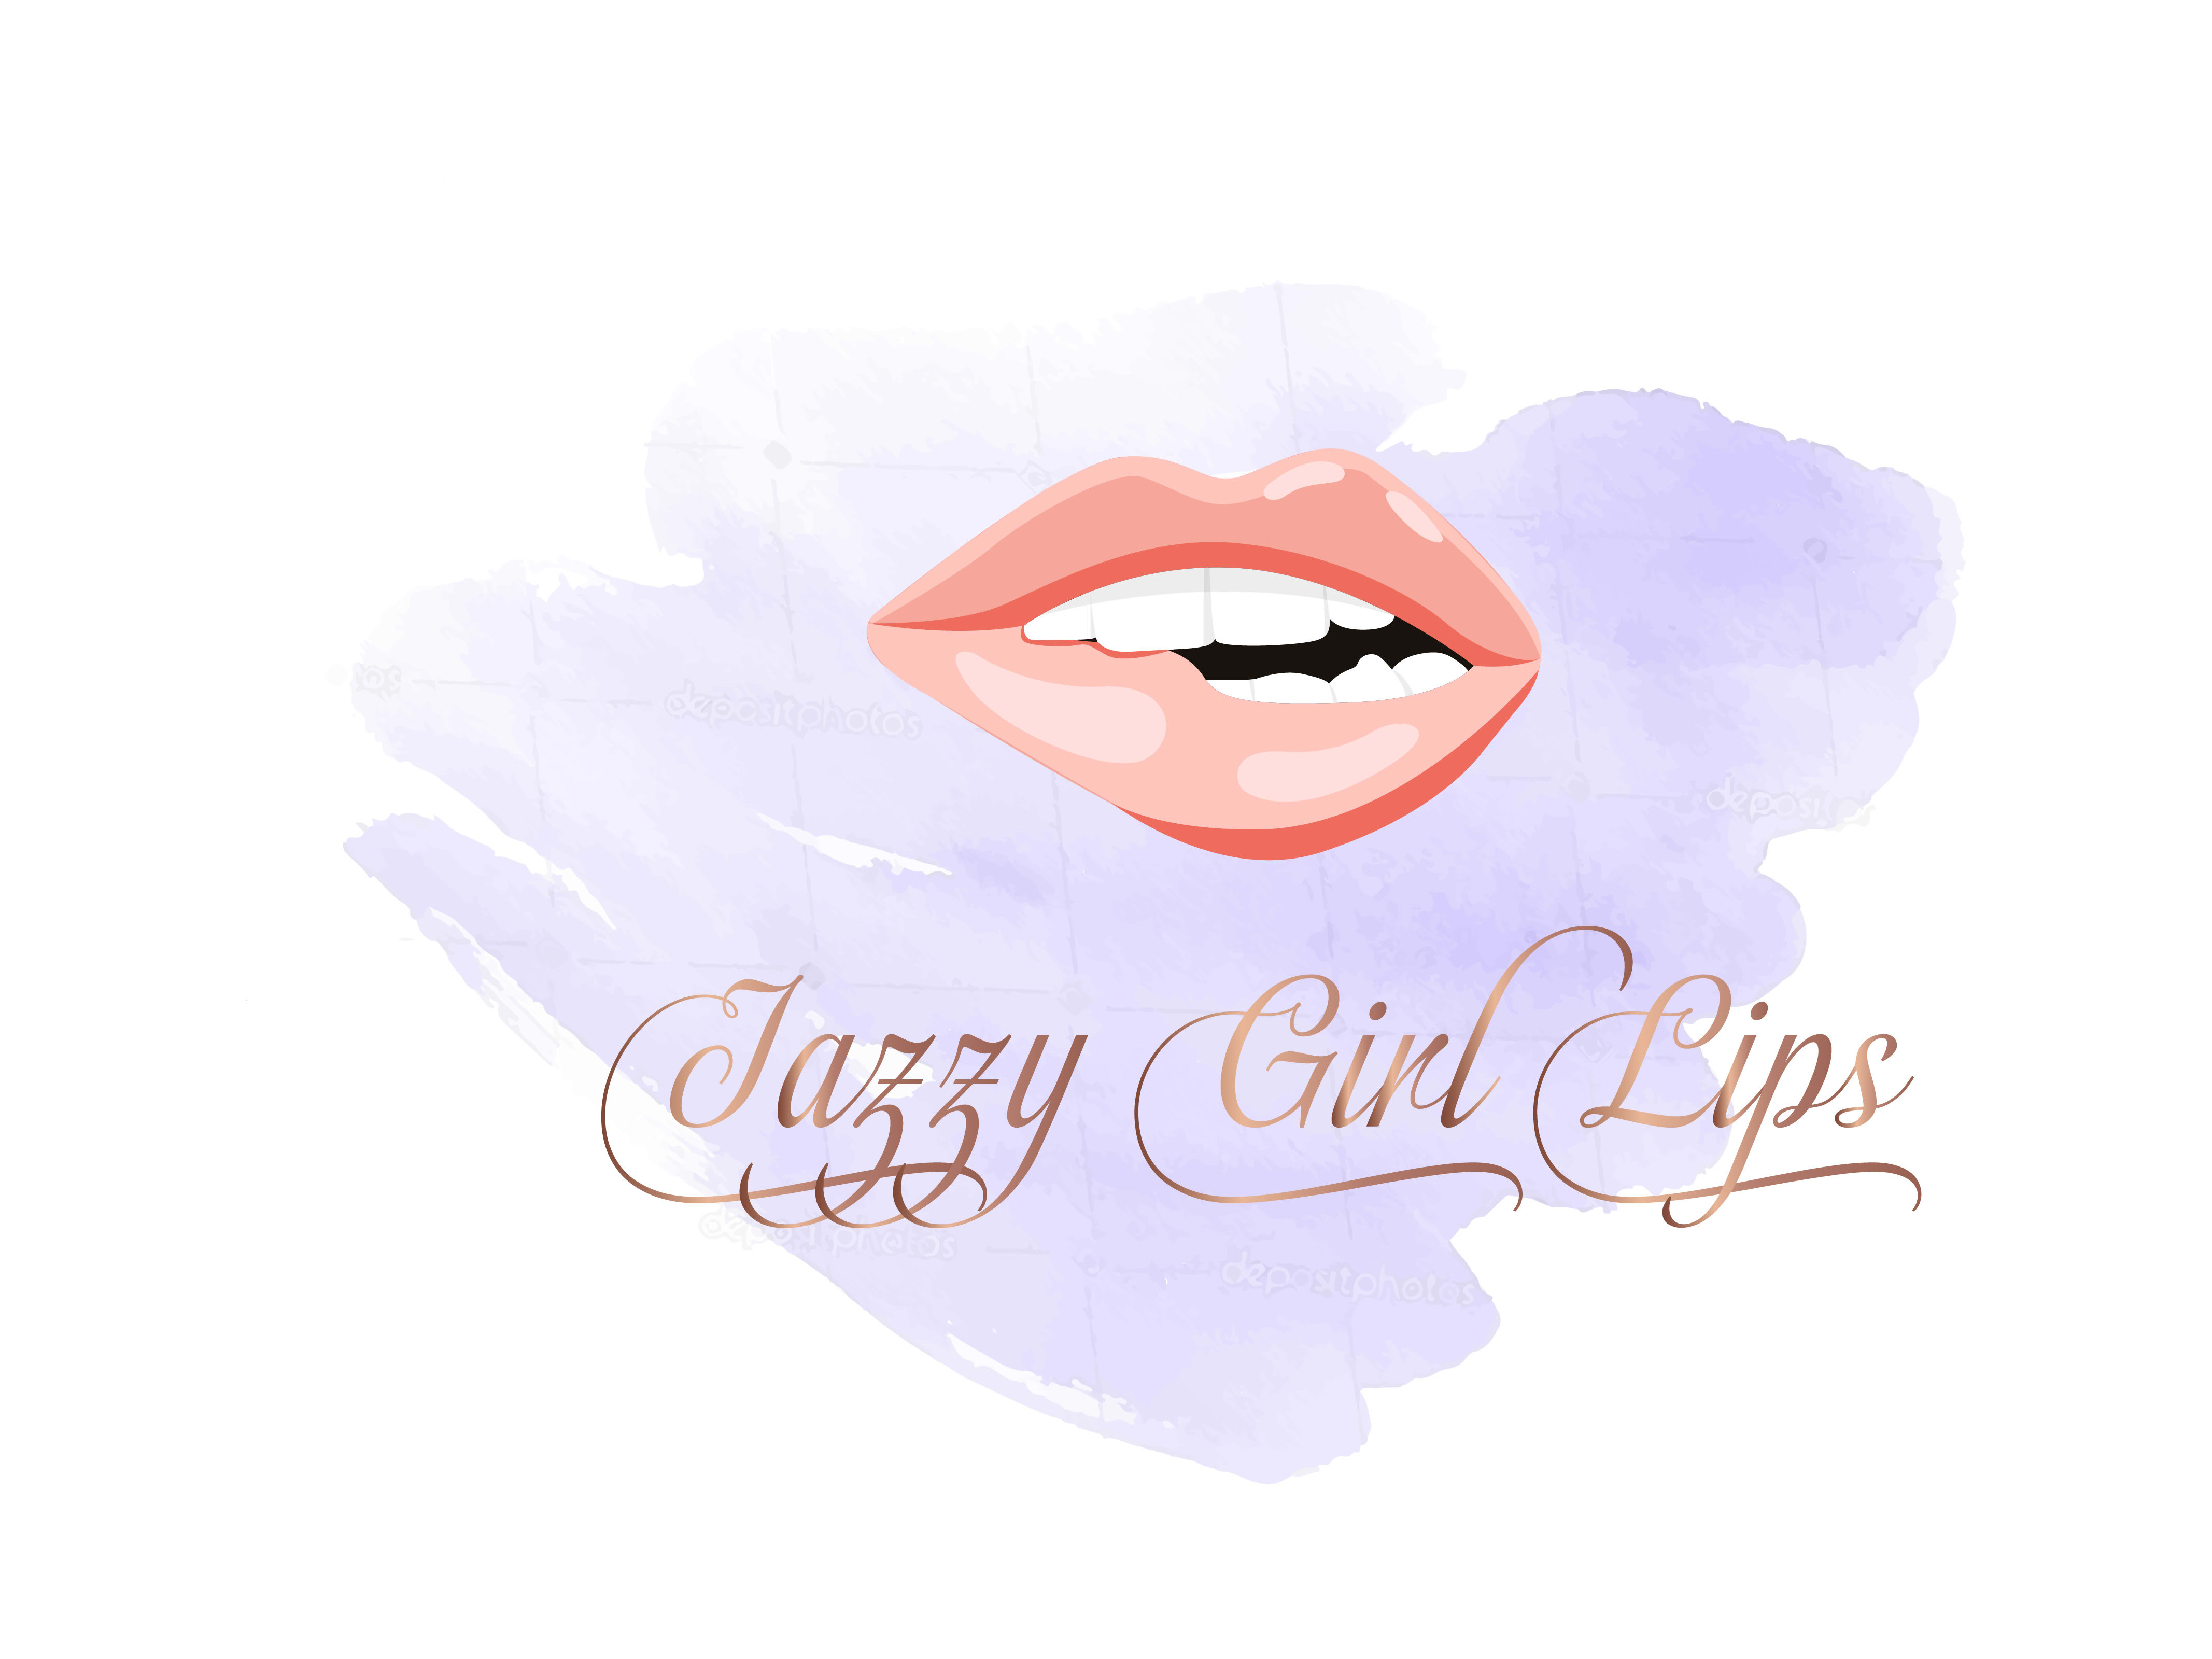 Jazzy Girl Lips